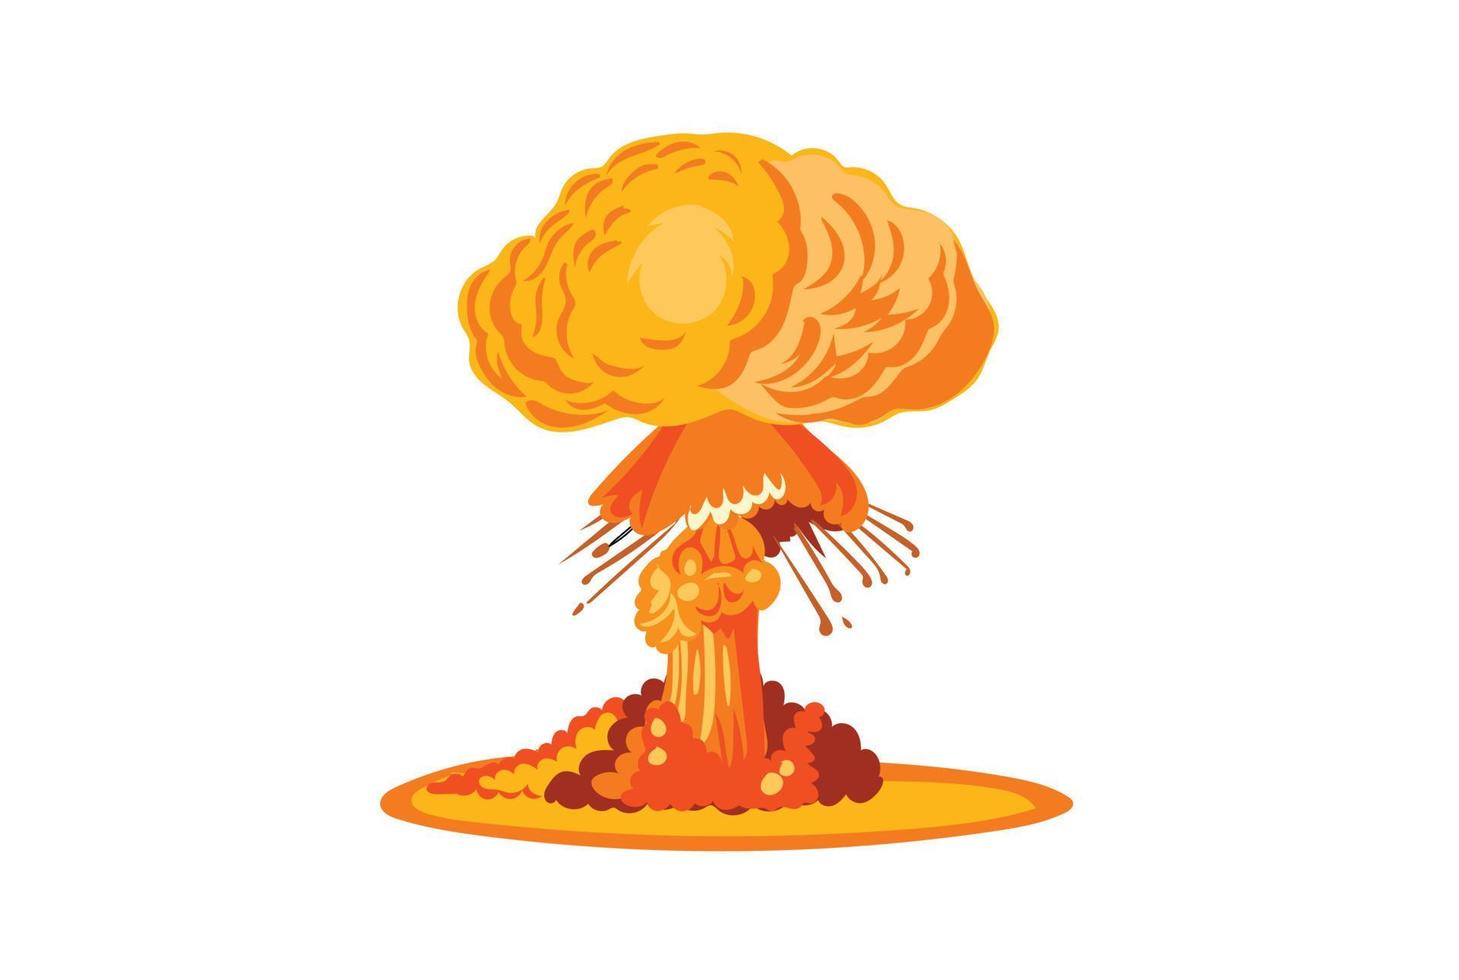 explosão nuclear, ilustração do dia de hiroshima vetor